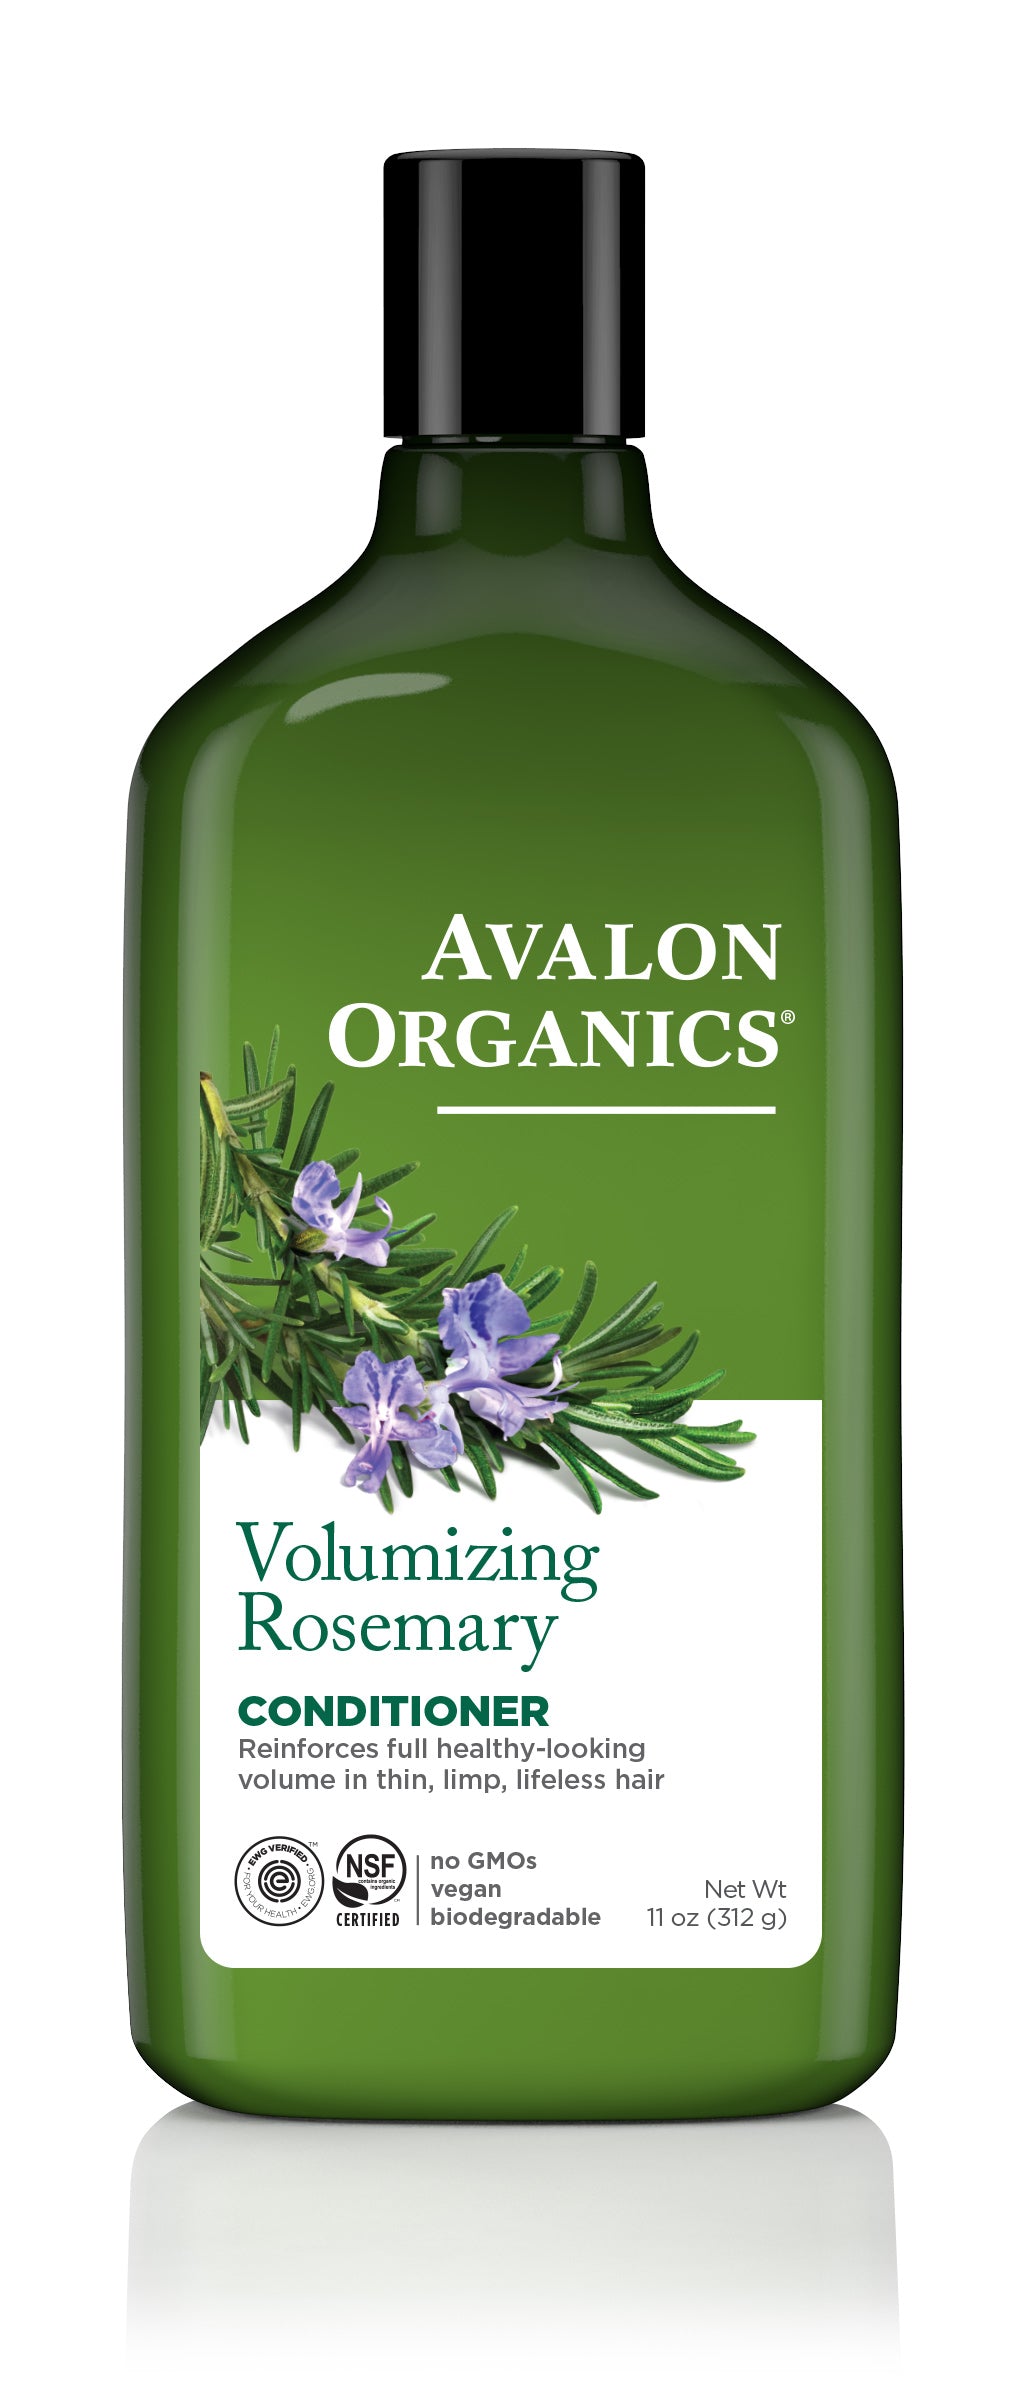 Volumizing Rosemary